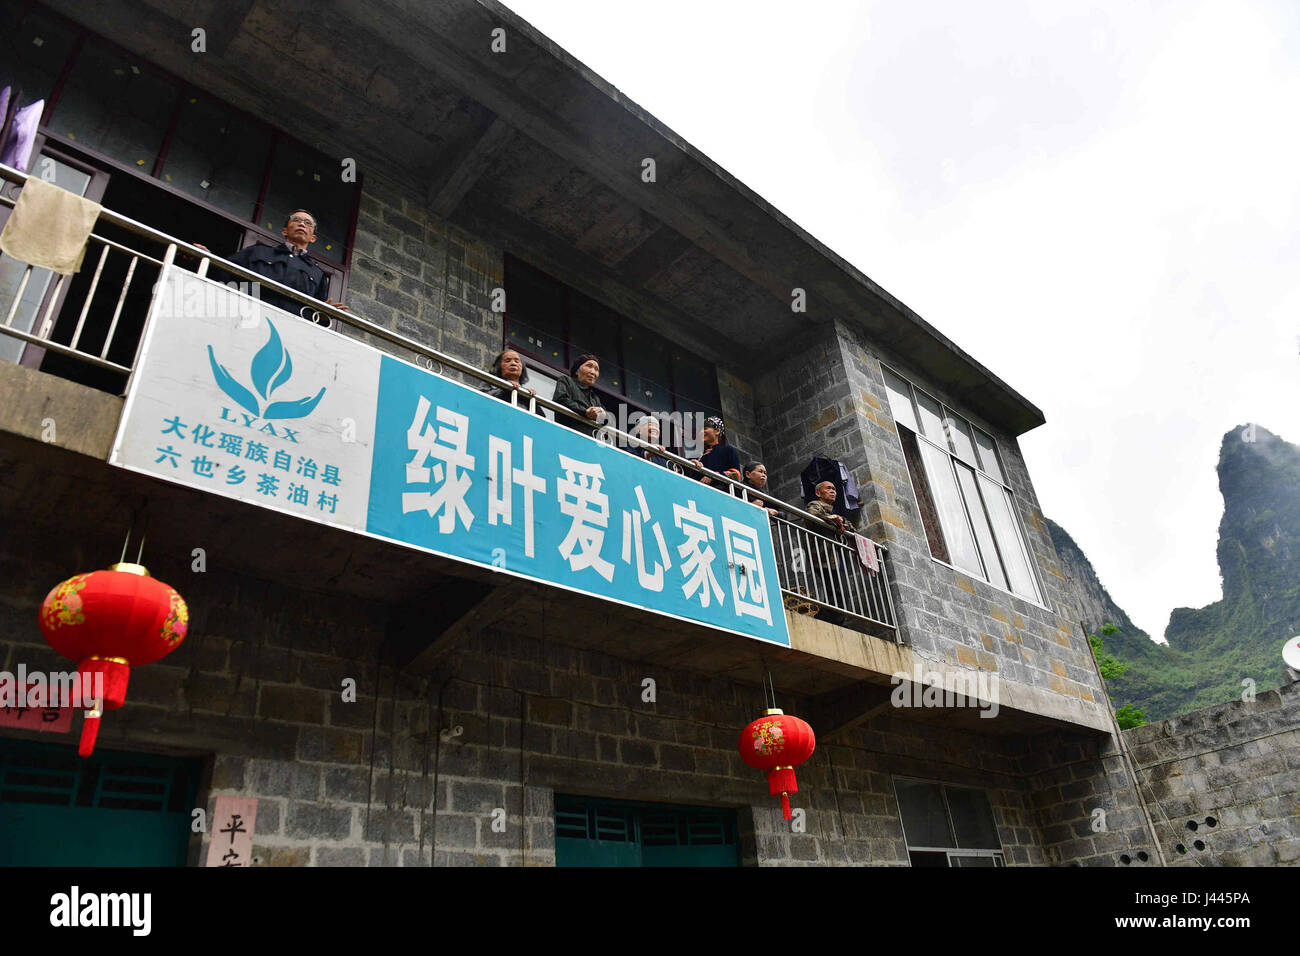 (170510) -- DAHUA, 10 maggio 2017 (Xinhua) -- anziani soli live presso la casa di cura costruito da Tang Cuiyu Chayou nel villaggio di Dahua Yao contea autonoma, a sud della Cina di Guangxi Zhuang Regione autonoma, 26 aprile 2017. Codolo Cuiyu, 50, è un funzionario civile nel villaggio Chayou. Essa spesso aiuta le persone che vivono in difficoltà nella zona remota durante il suo lavoro. Dal 2003, ha visitato circa 200 villaggi e fornito assistenza a quasi 100 lonely anziani e persone con disabilità e le malattie mentali nel suo tempo libero volontariamente. Codolo ha offerto anche un sostegno finanziario per aiutare a circa 35 underprivil Foto Stock